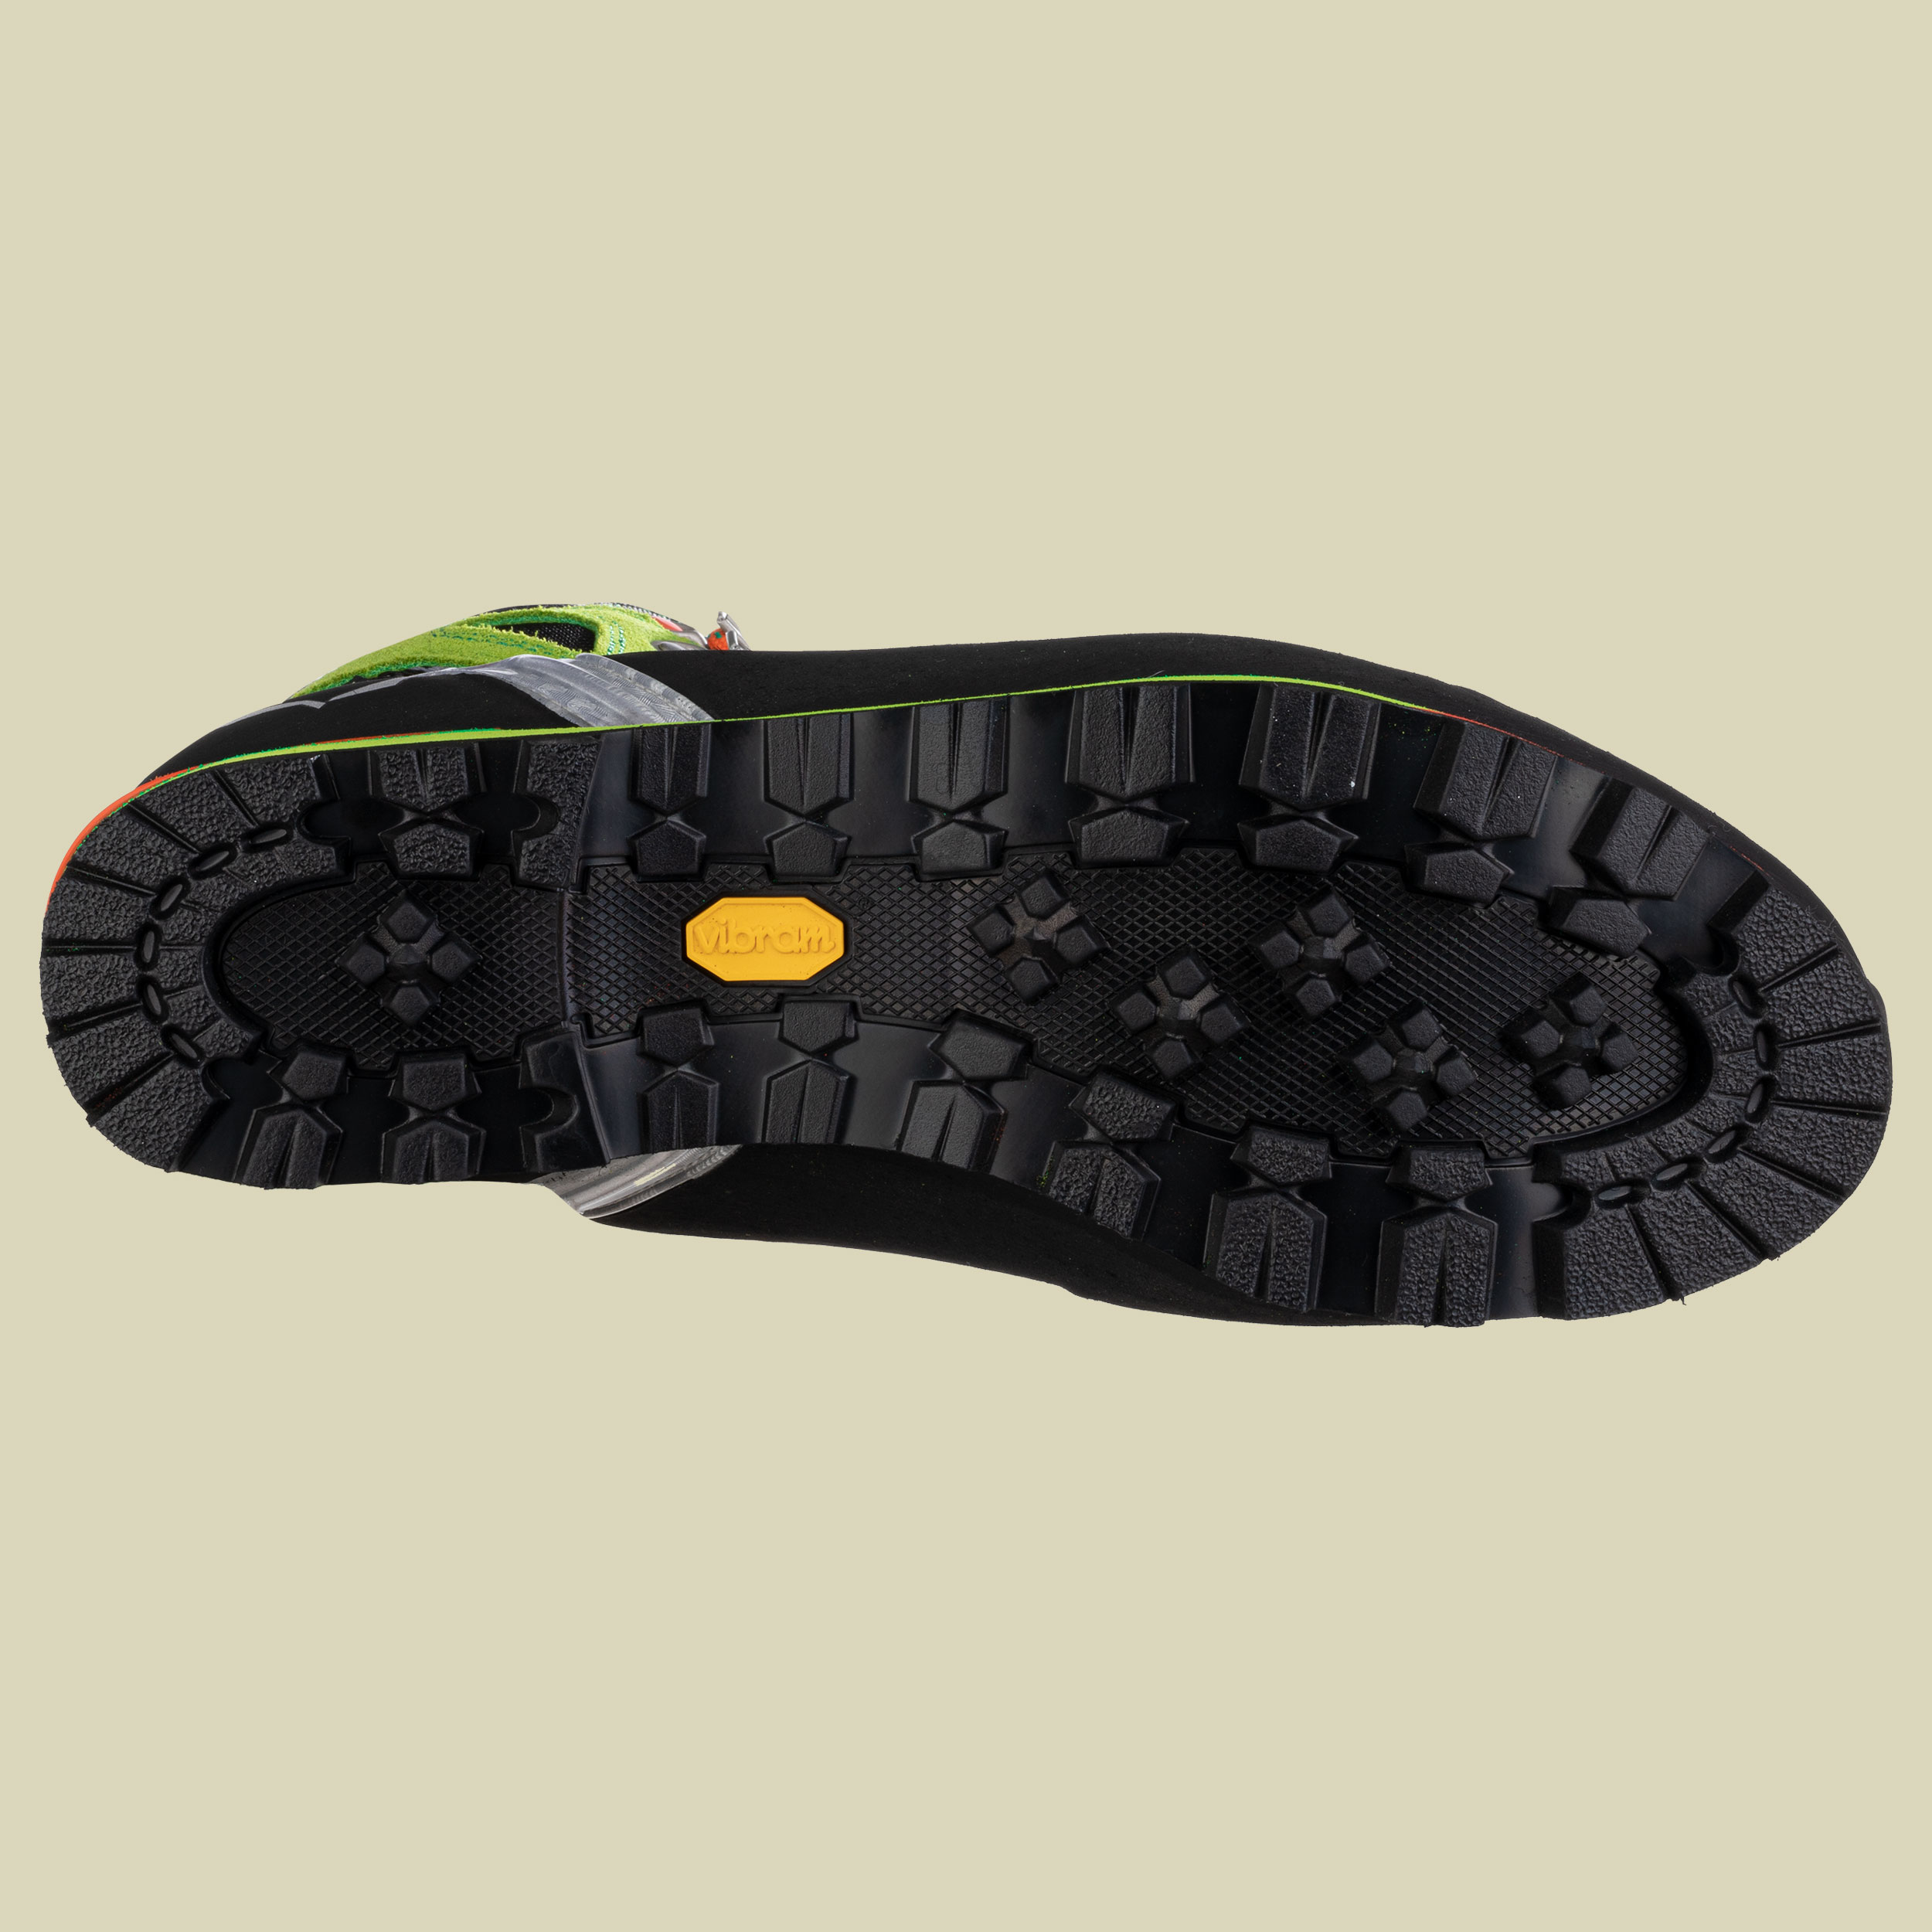 Condor Evo GTX Boot Men Größe UK 8,5 Farbe black/cactus